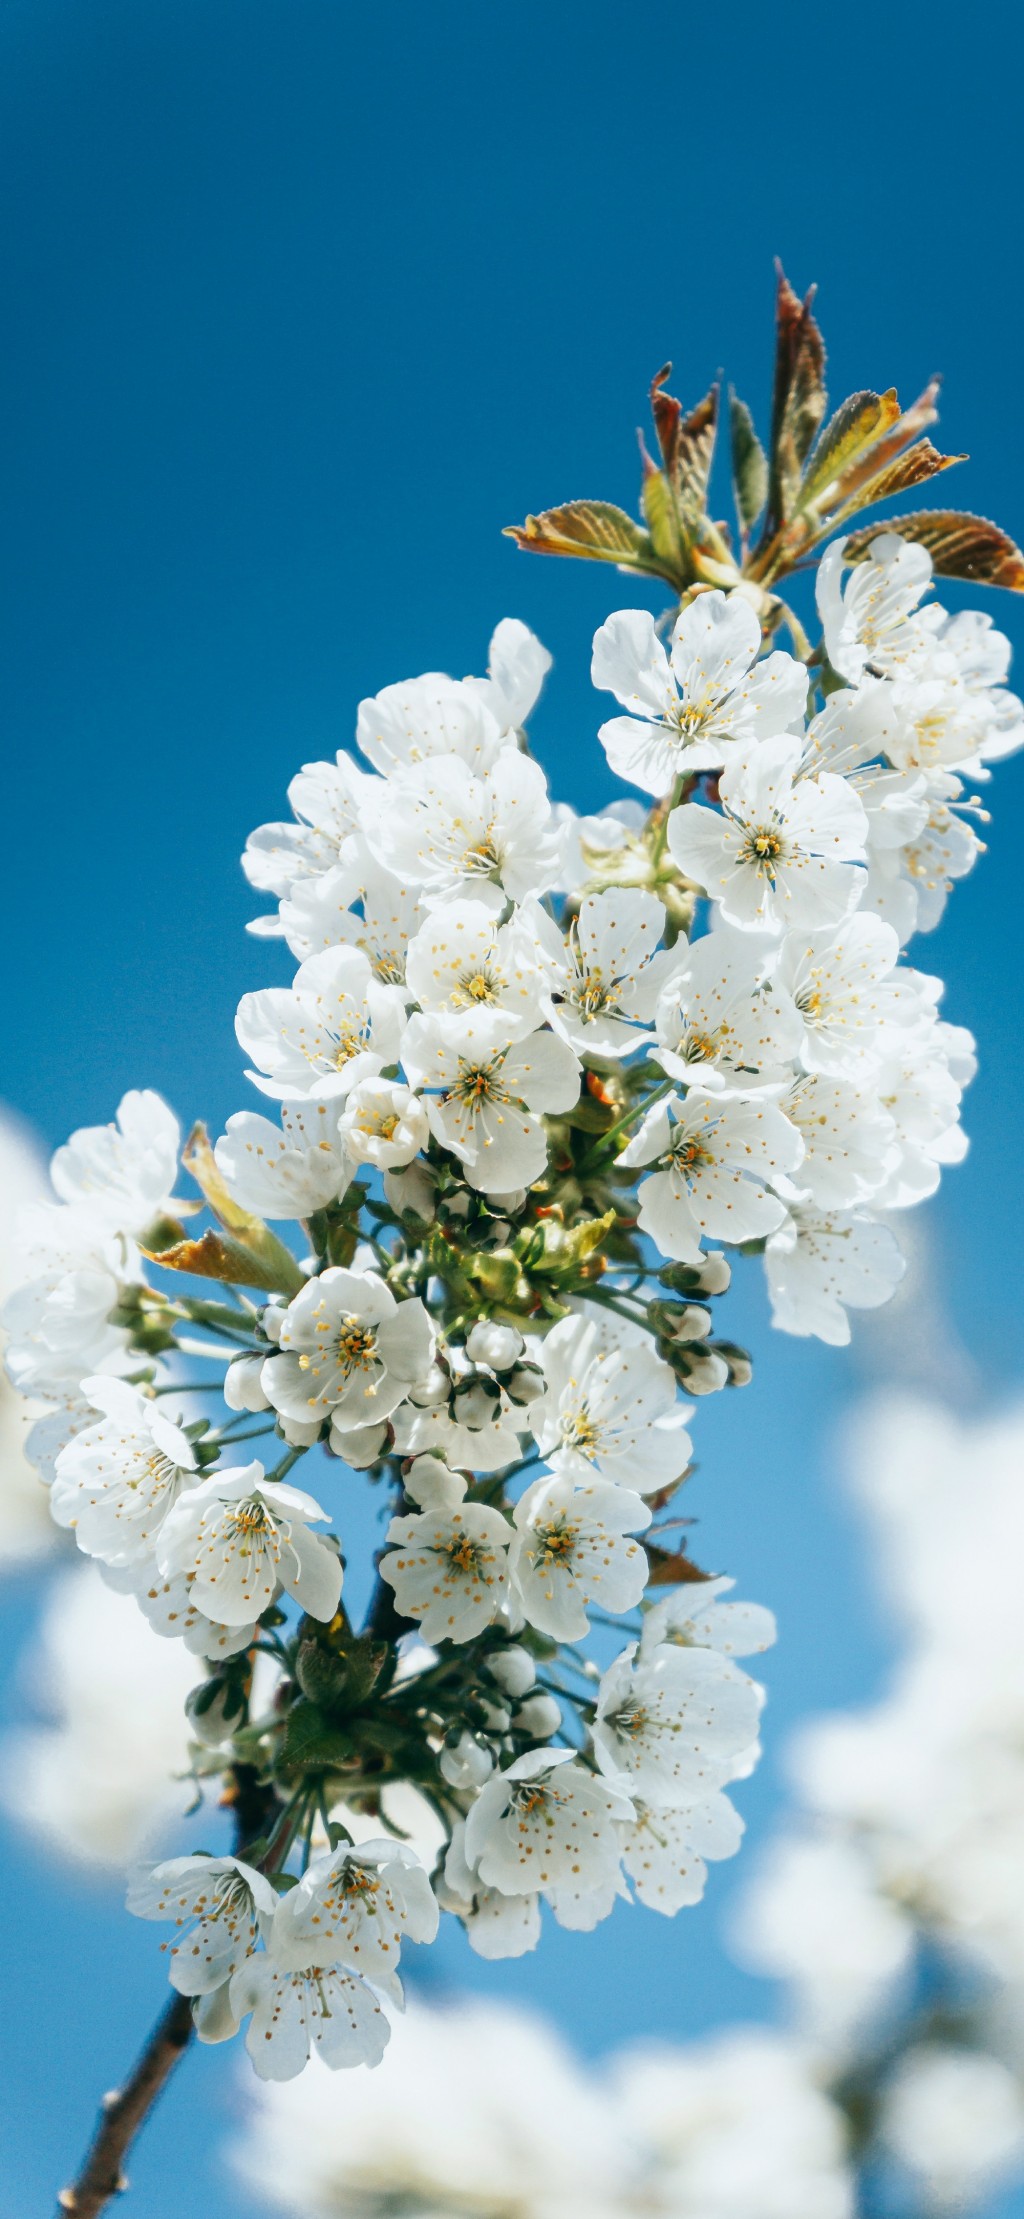 春暖花开鲜花美景手机壁纸